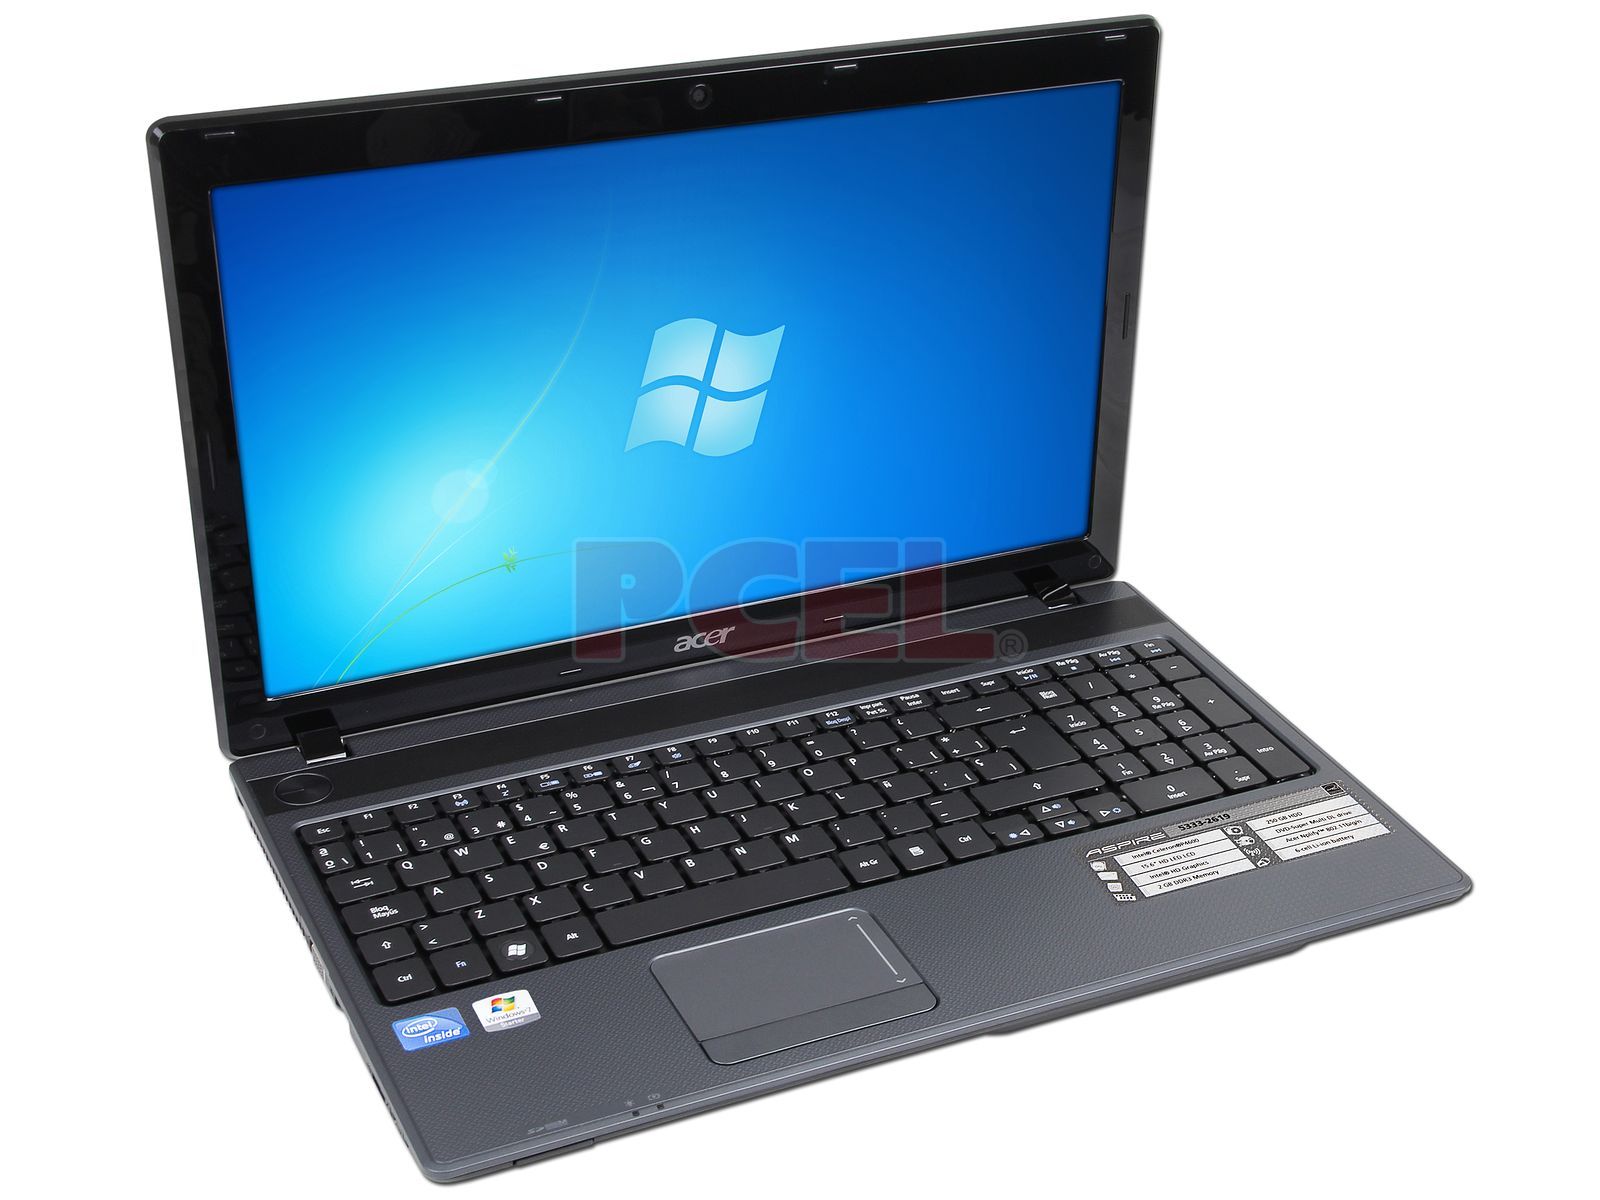 Doctor en Filosofía marioneta Alienación Laptop Acer Aspire 5333-2619: Procesador Intel Celeron P4600 (2.0 GHz),  Memoria de 2GB DDR3, Disco Duro de 250GB, Pantalla LED de 15.6", Video  Intel HD Graphics, DVD/RW Super-Multi DL, Red 802.11b/g/n, Windows